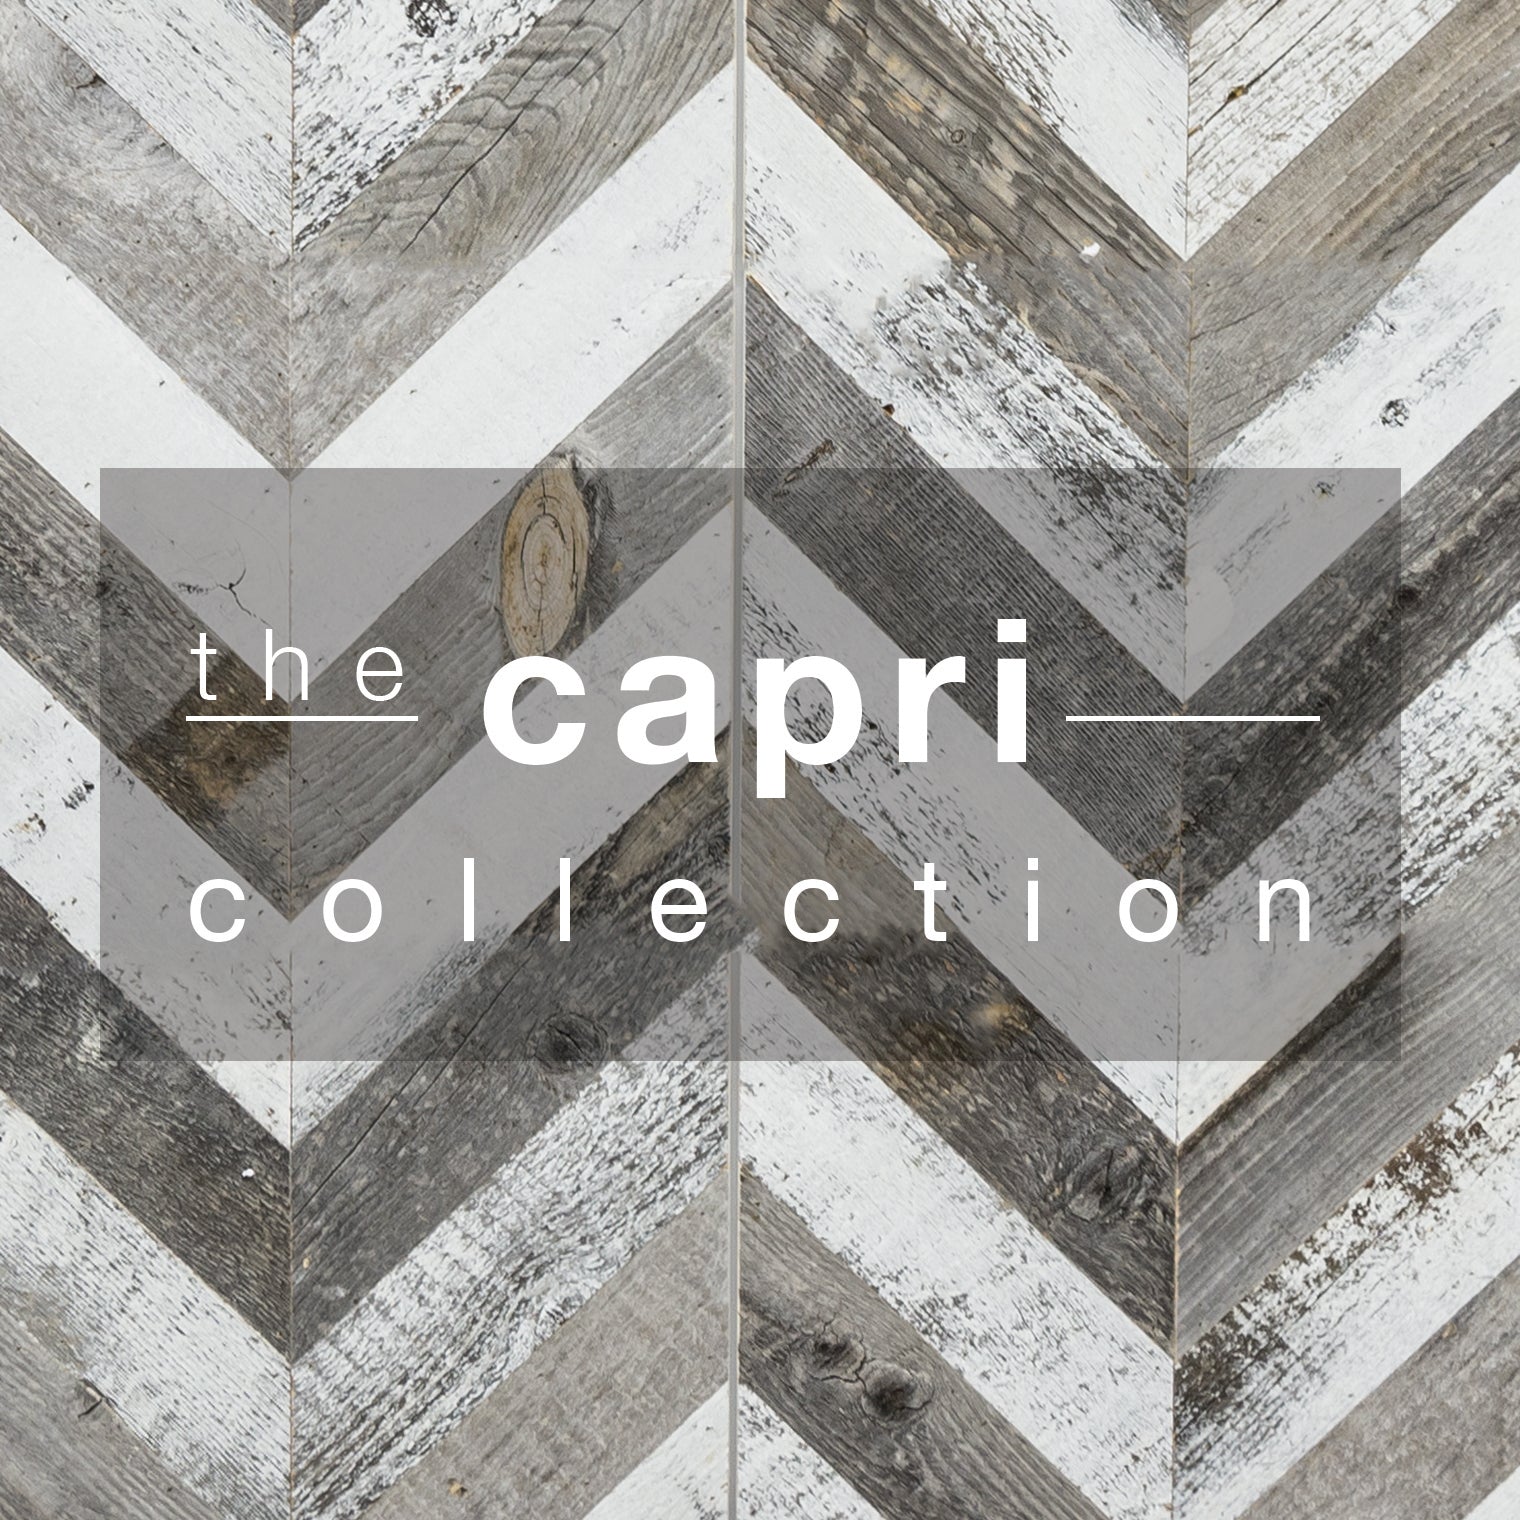 Capri Collection